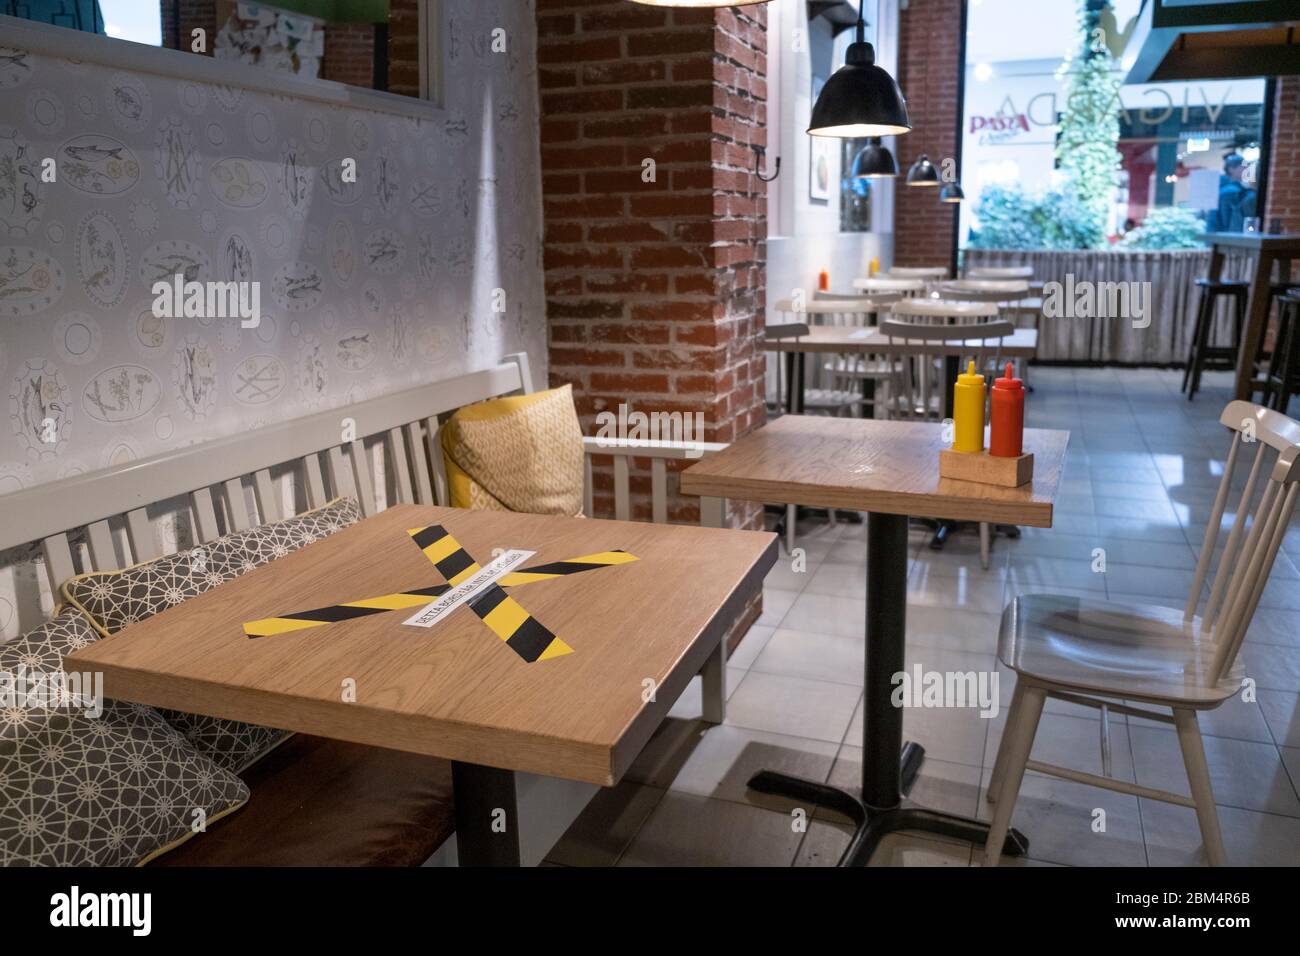 Esta tabla no debe utilizarse. Información en un restaurante durante el Corronapandemin. Foto de stock